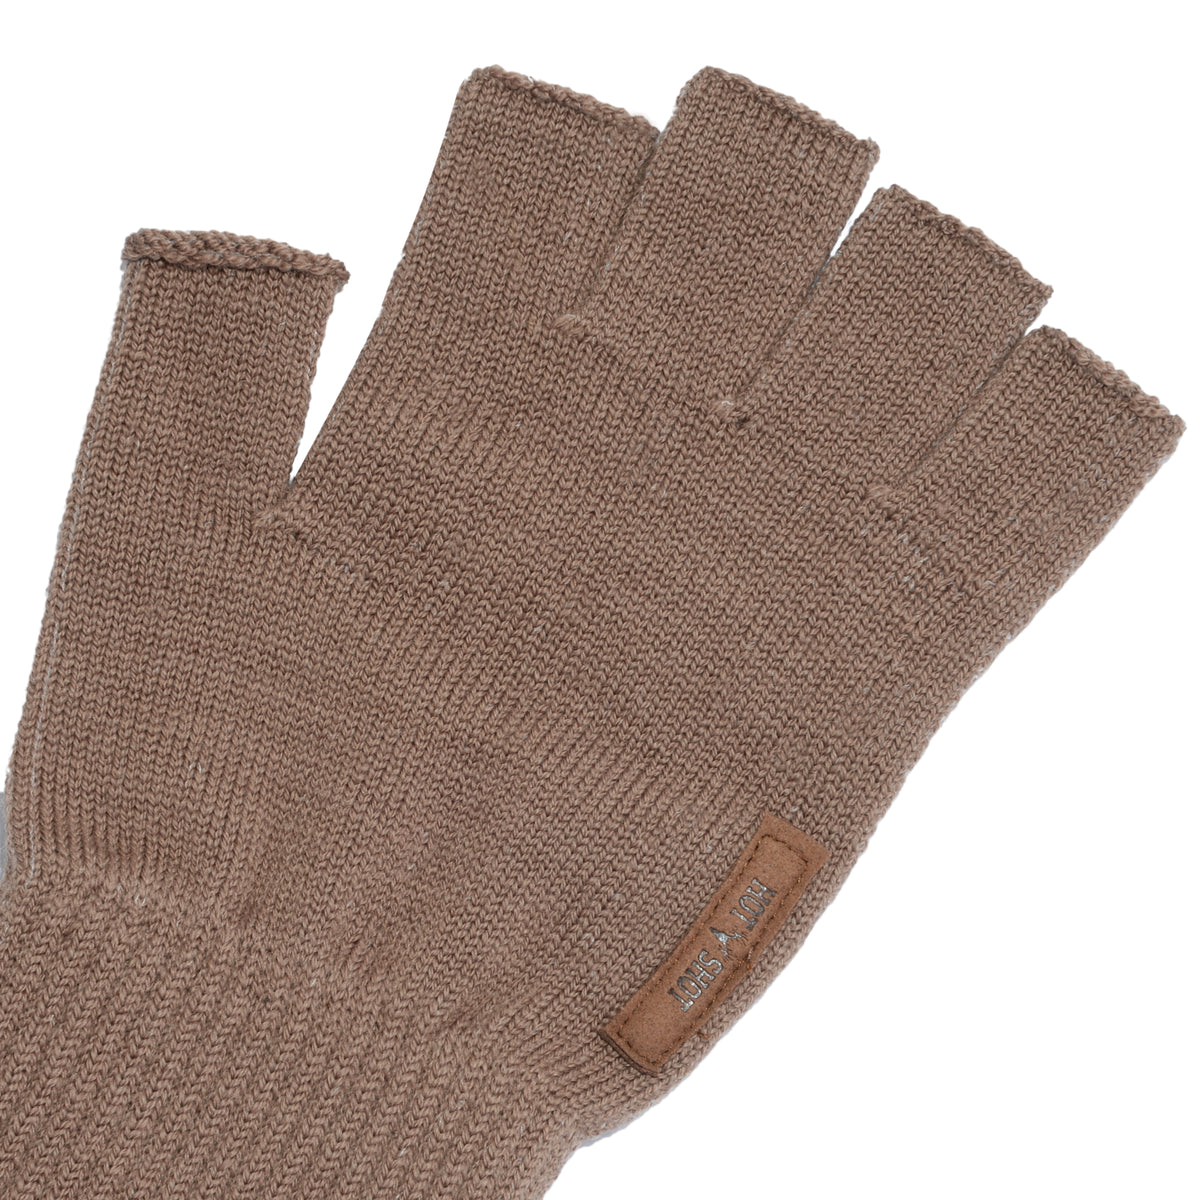 Bodychum Men's Work Gloves Waterproof Fingerless Fishing Gloves